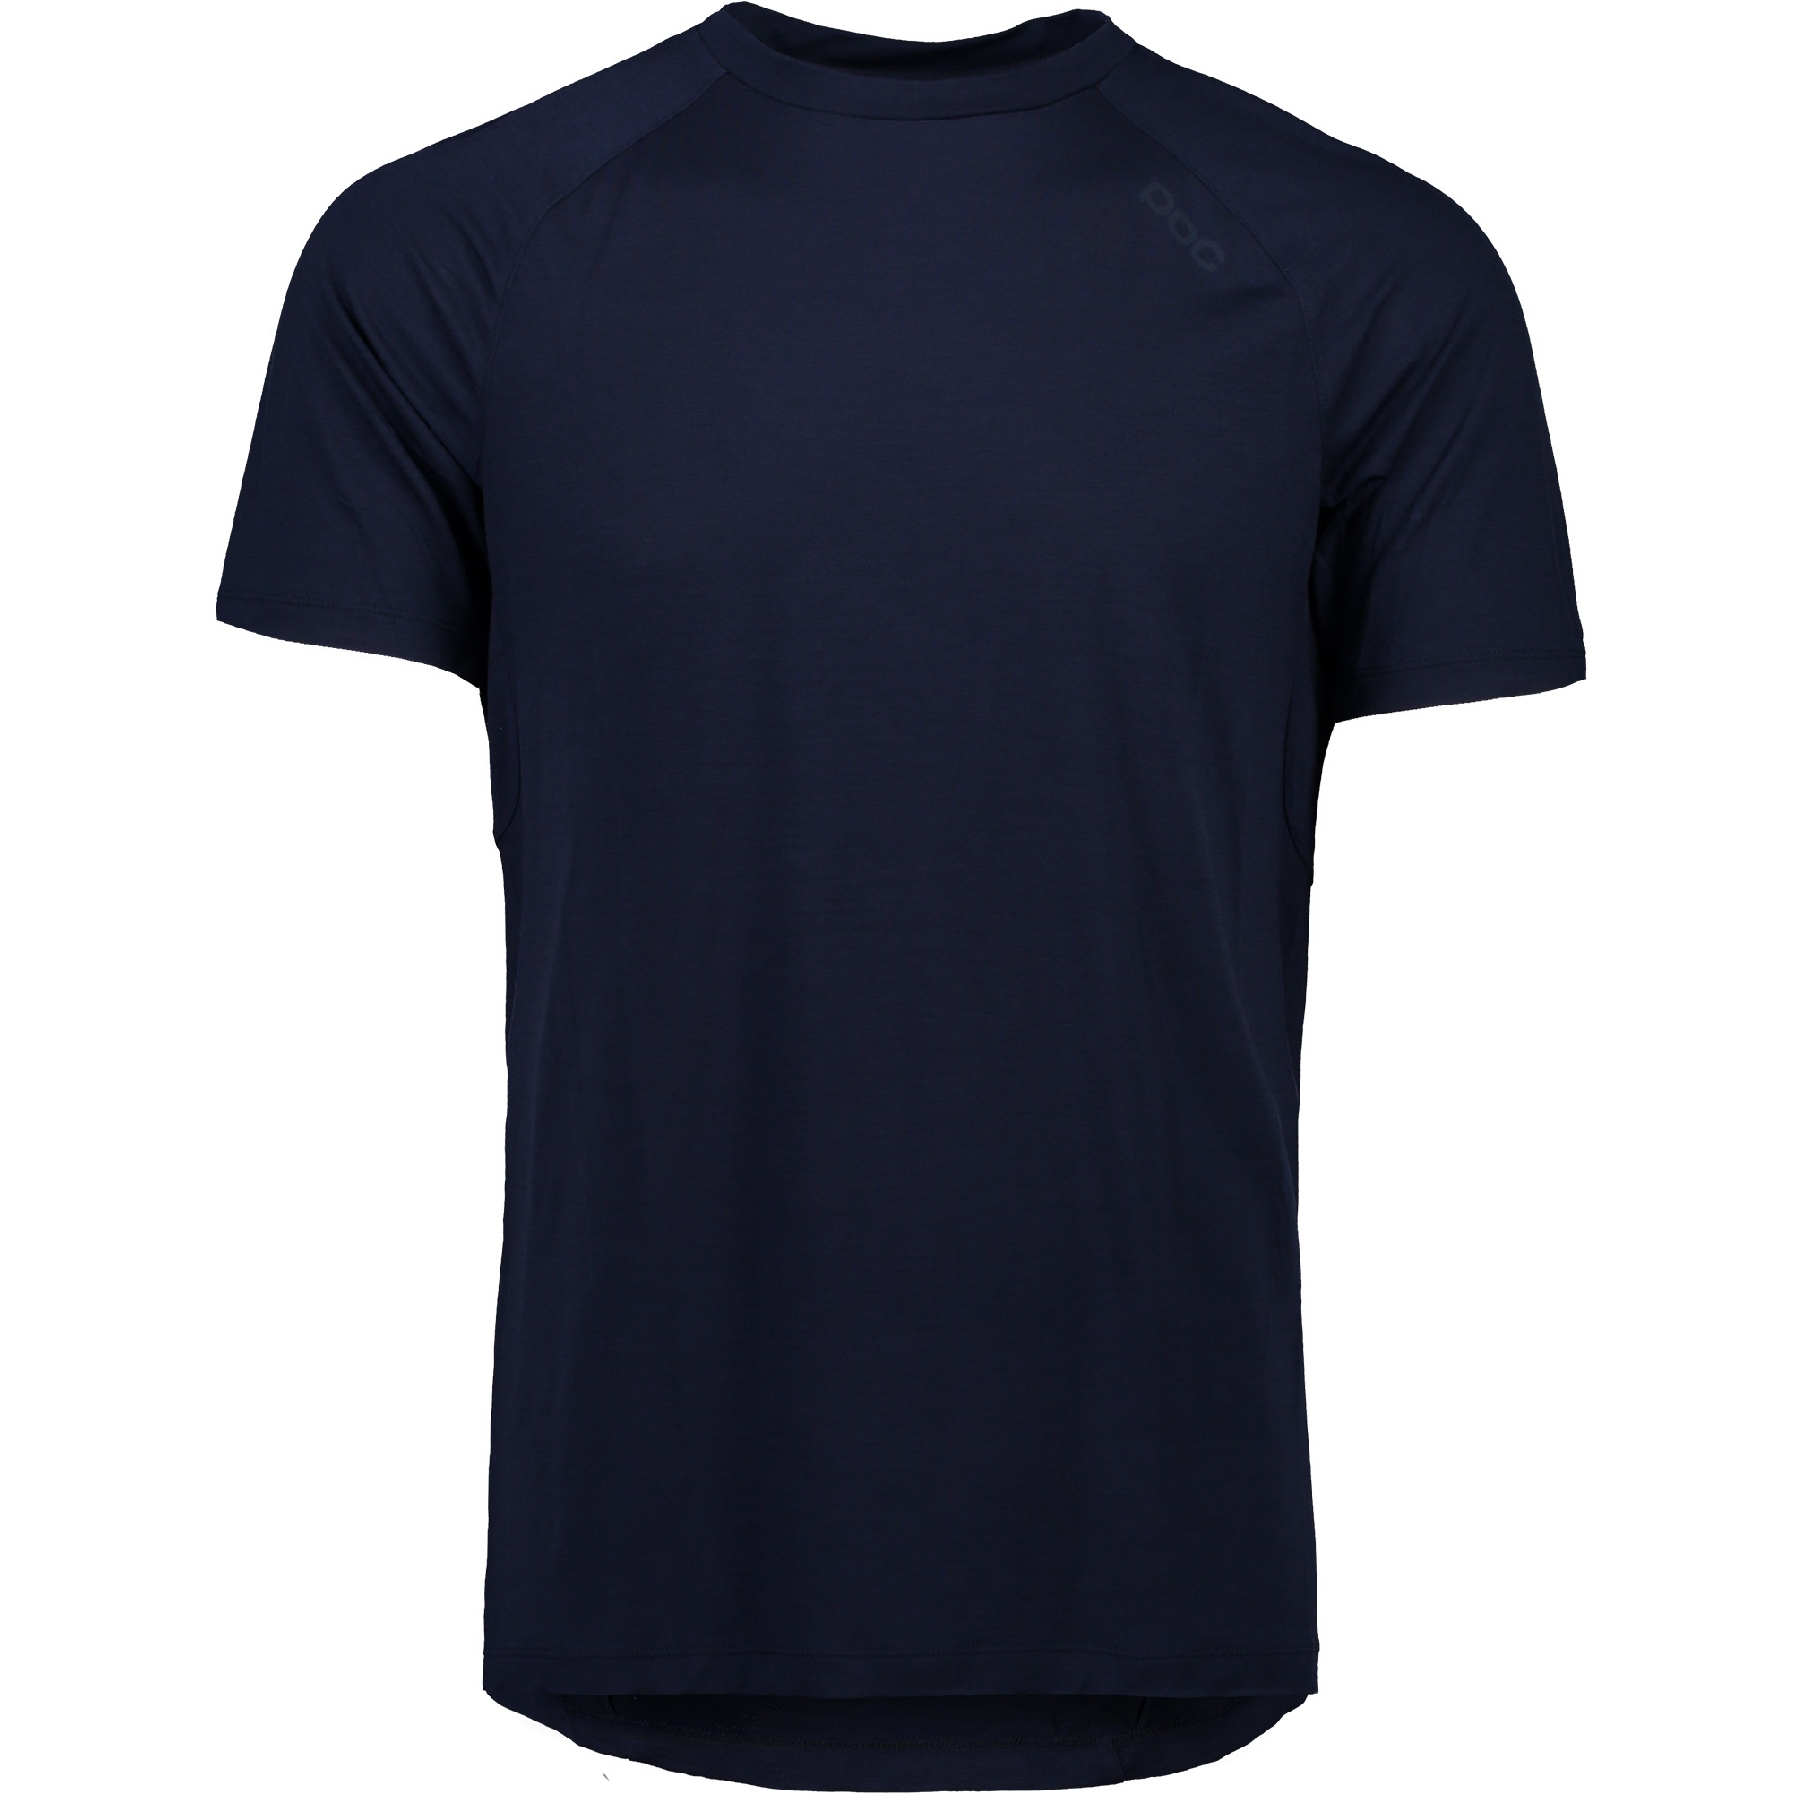 Produktbild von POC Light Merino T-Shirt Herren - 1582 Turmaline Navy